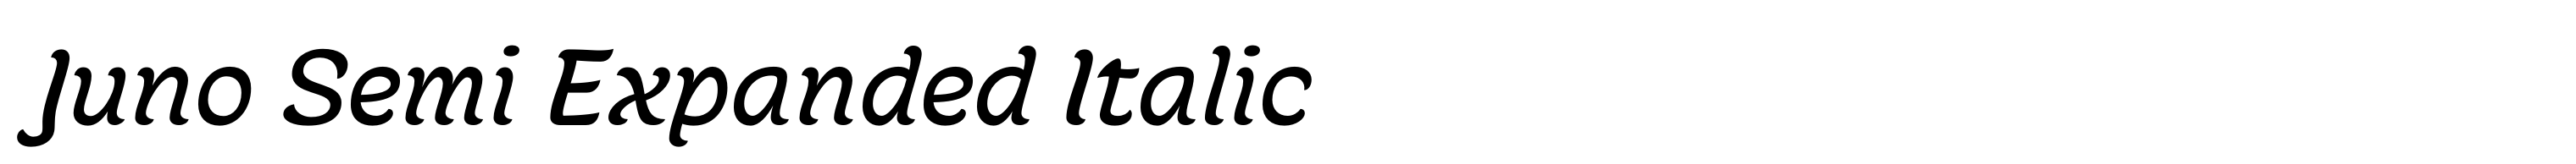 Juno Semi Expanded Italic